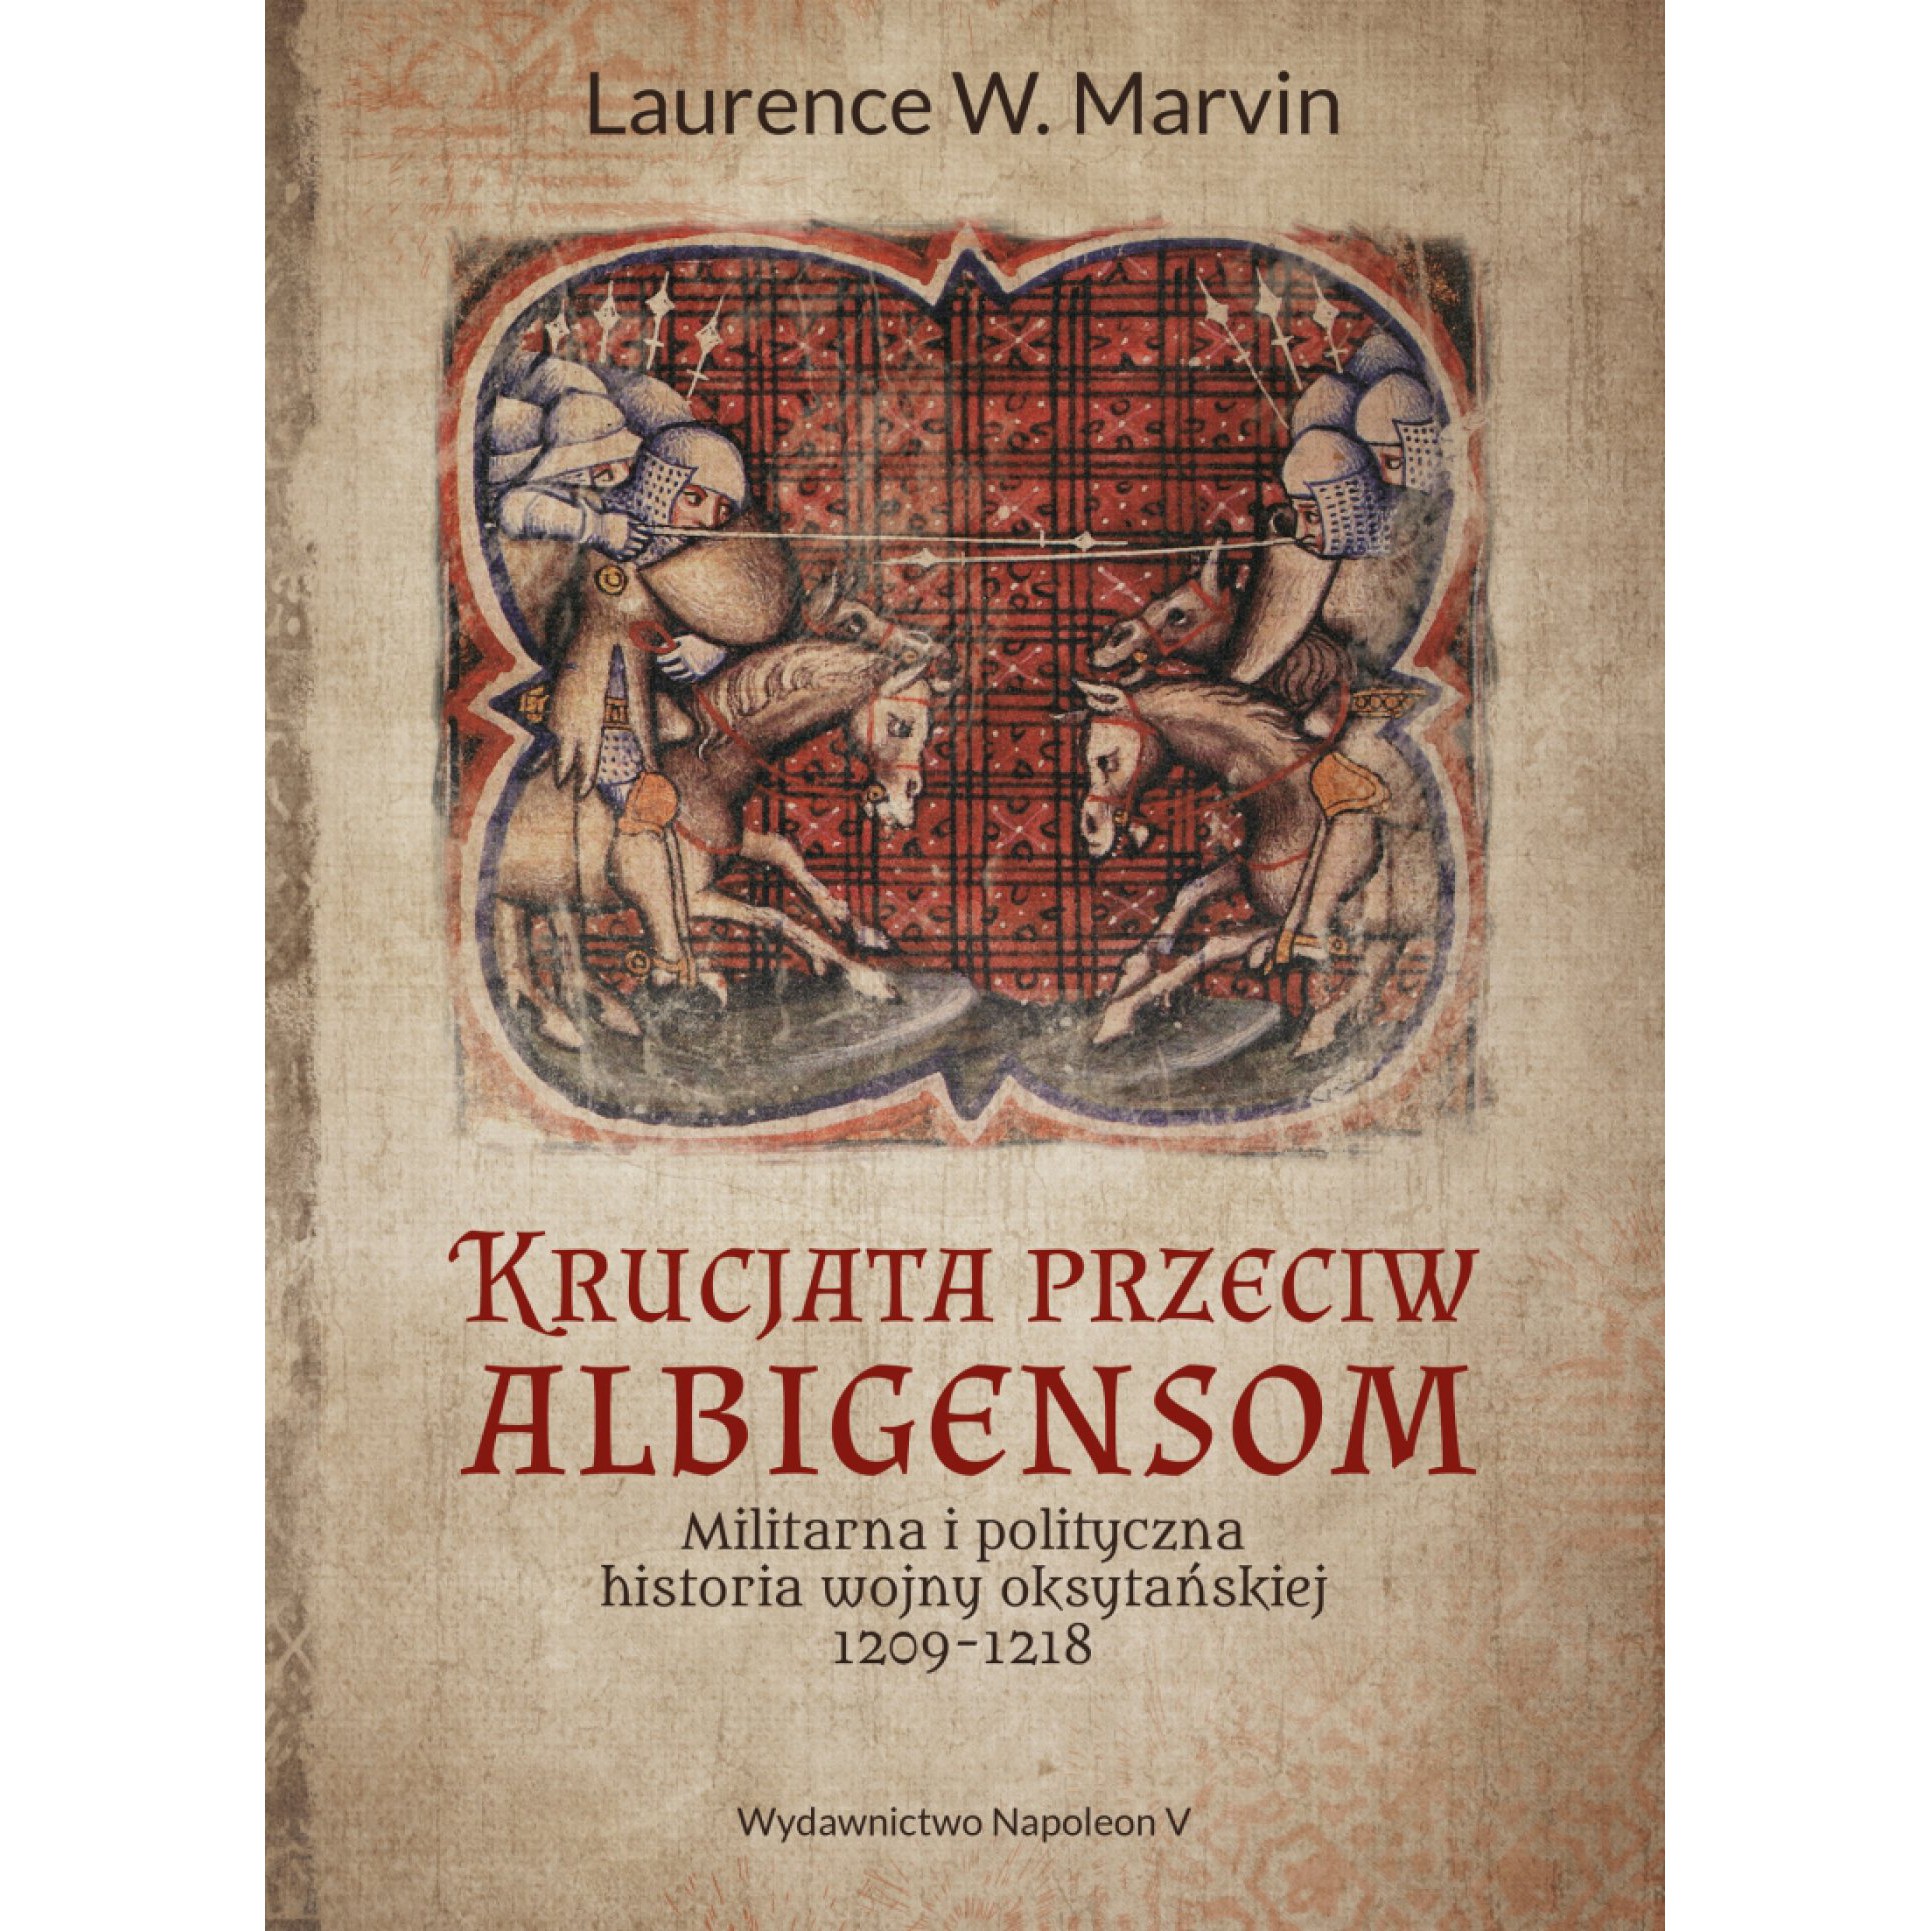 Krucjata przeciw albigensom. Militarna i polityczna historia wojny oksytańskiej, 1209-1218